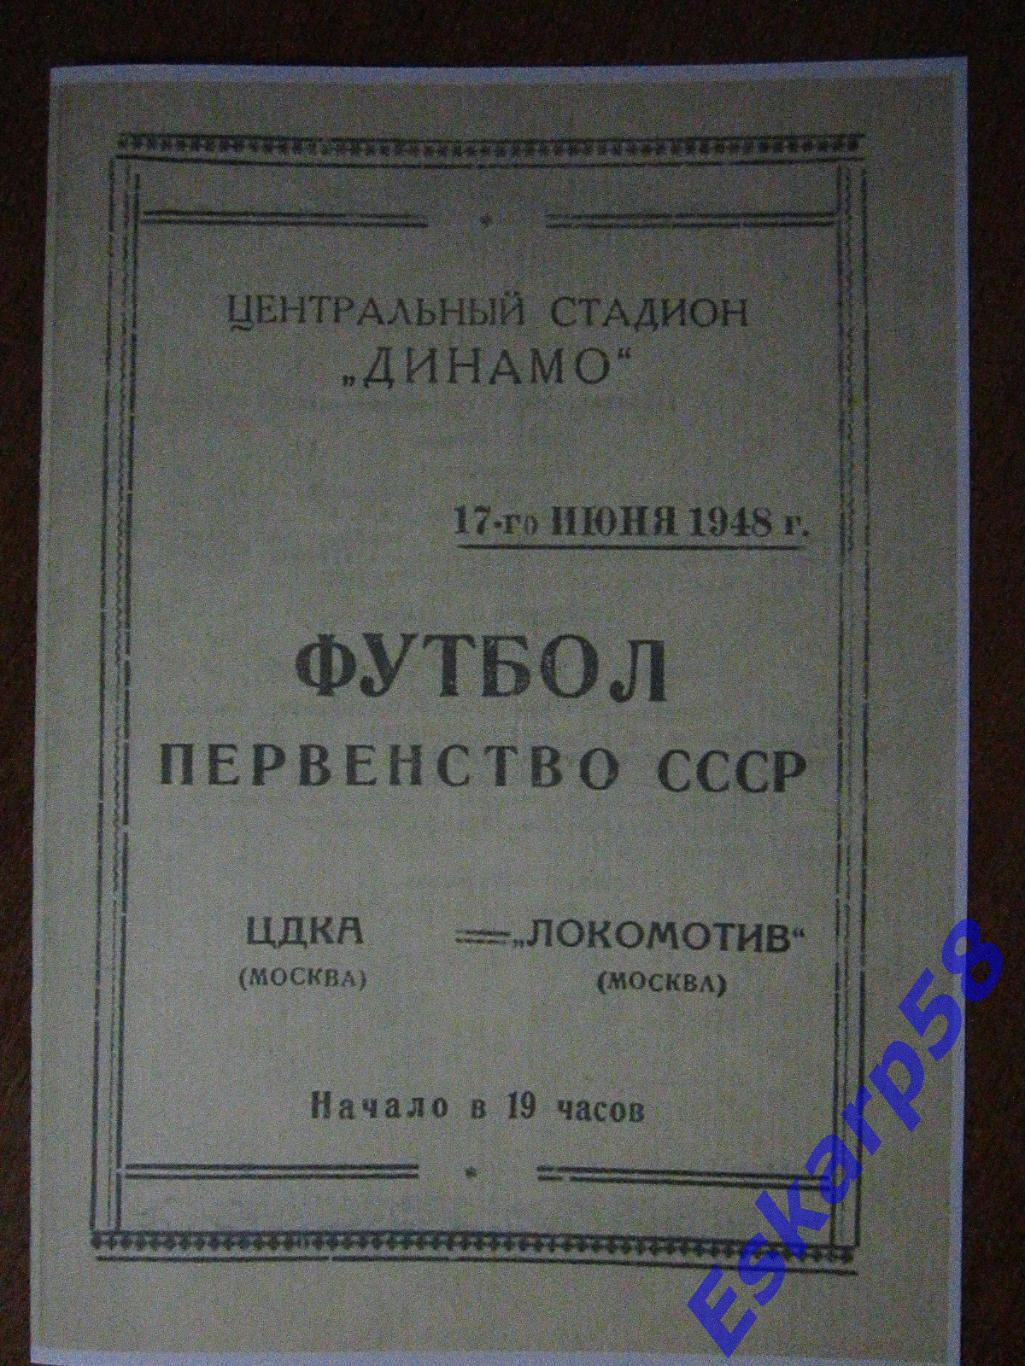 1948. ЦДКА-Локомотив Москва. 17.06. Копия